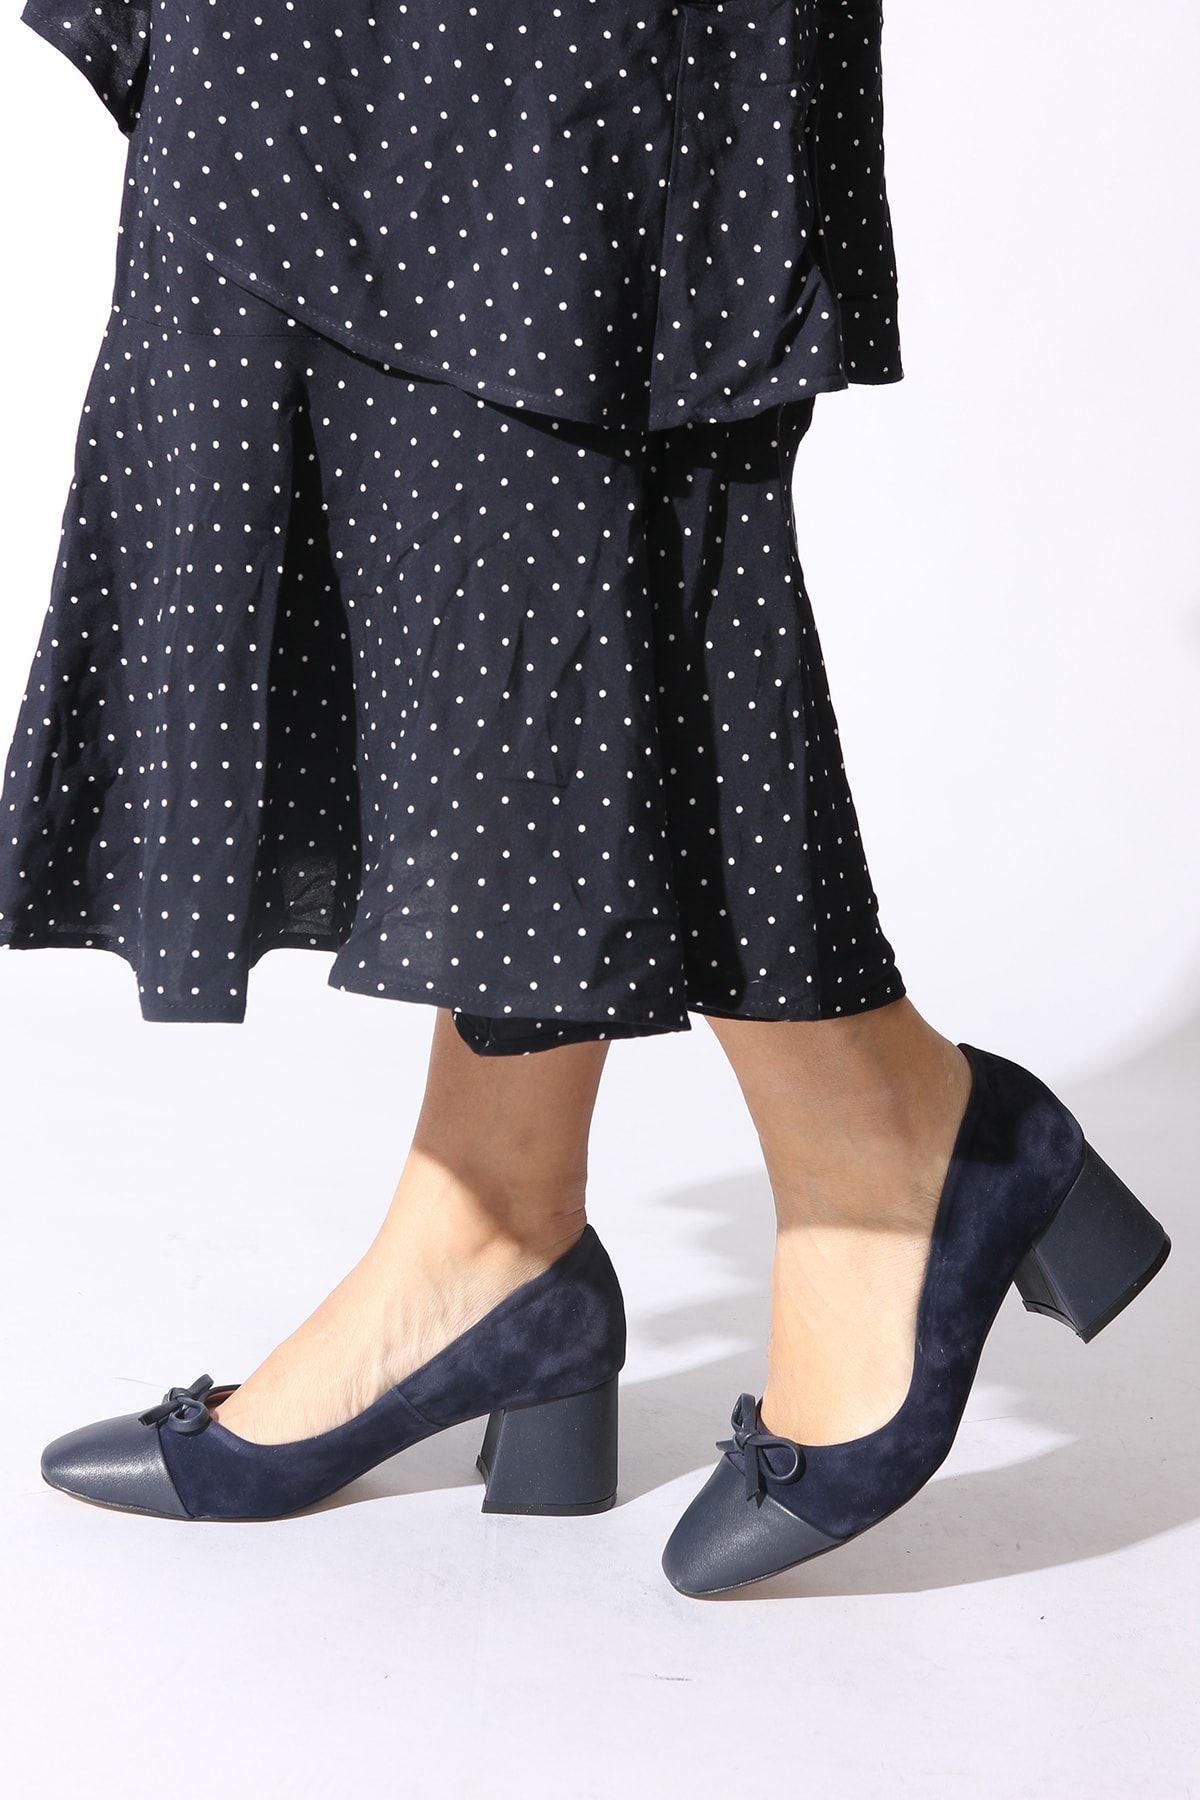 Rovigo Lacivert Kadın Klasik Topuklu Ayakkabı 2014793-06